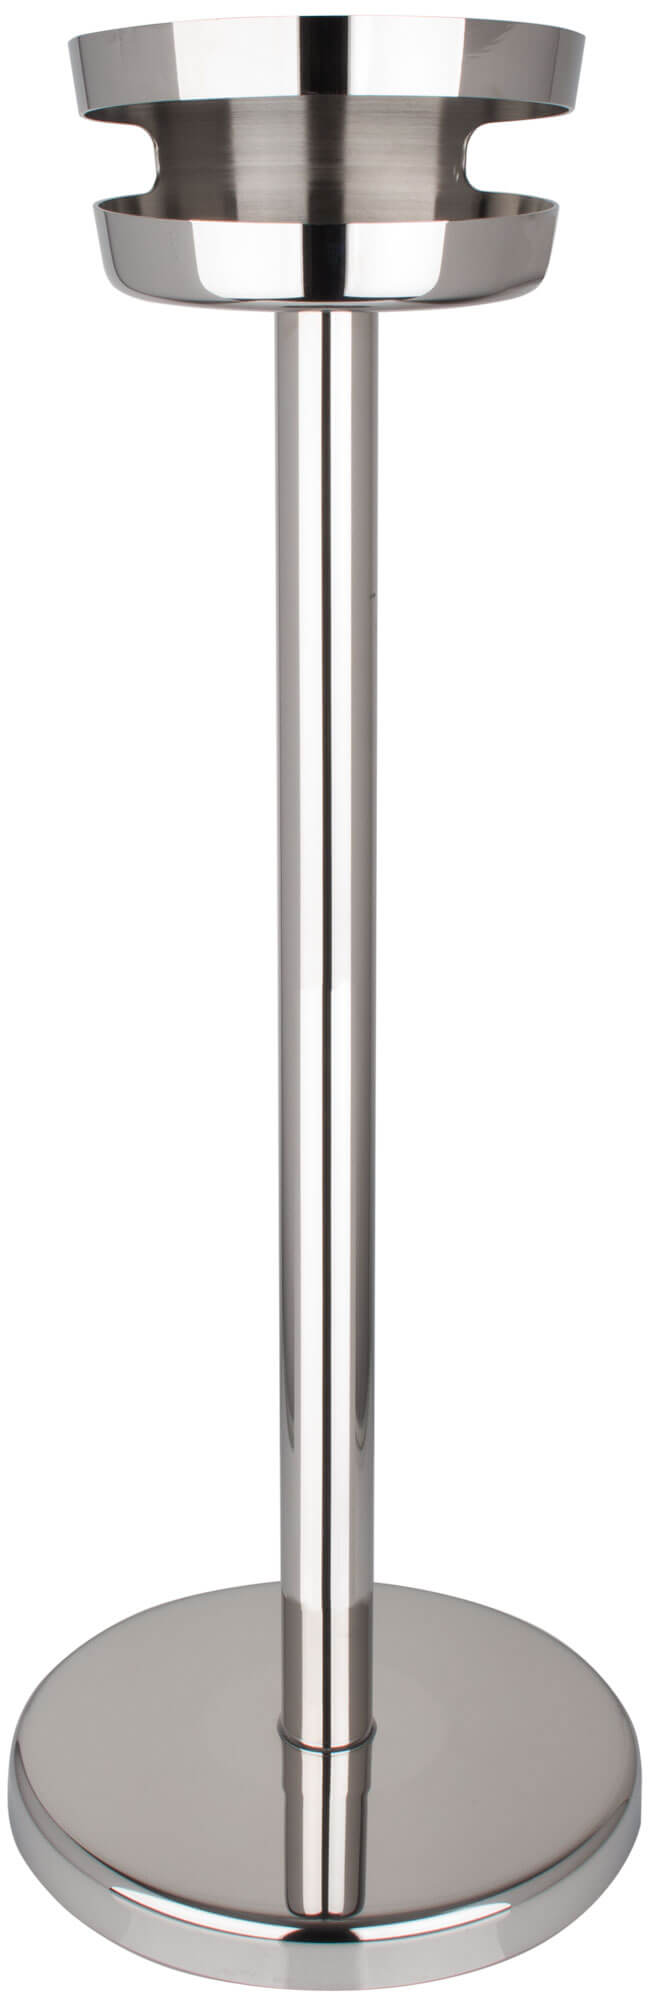 Ständer für Flaschenkühler/Weinkühler, Edelstahl - 17,5cm